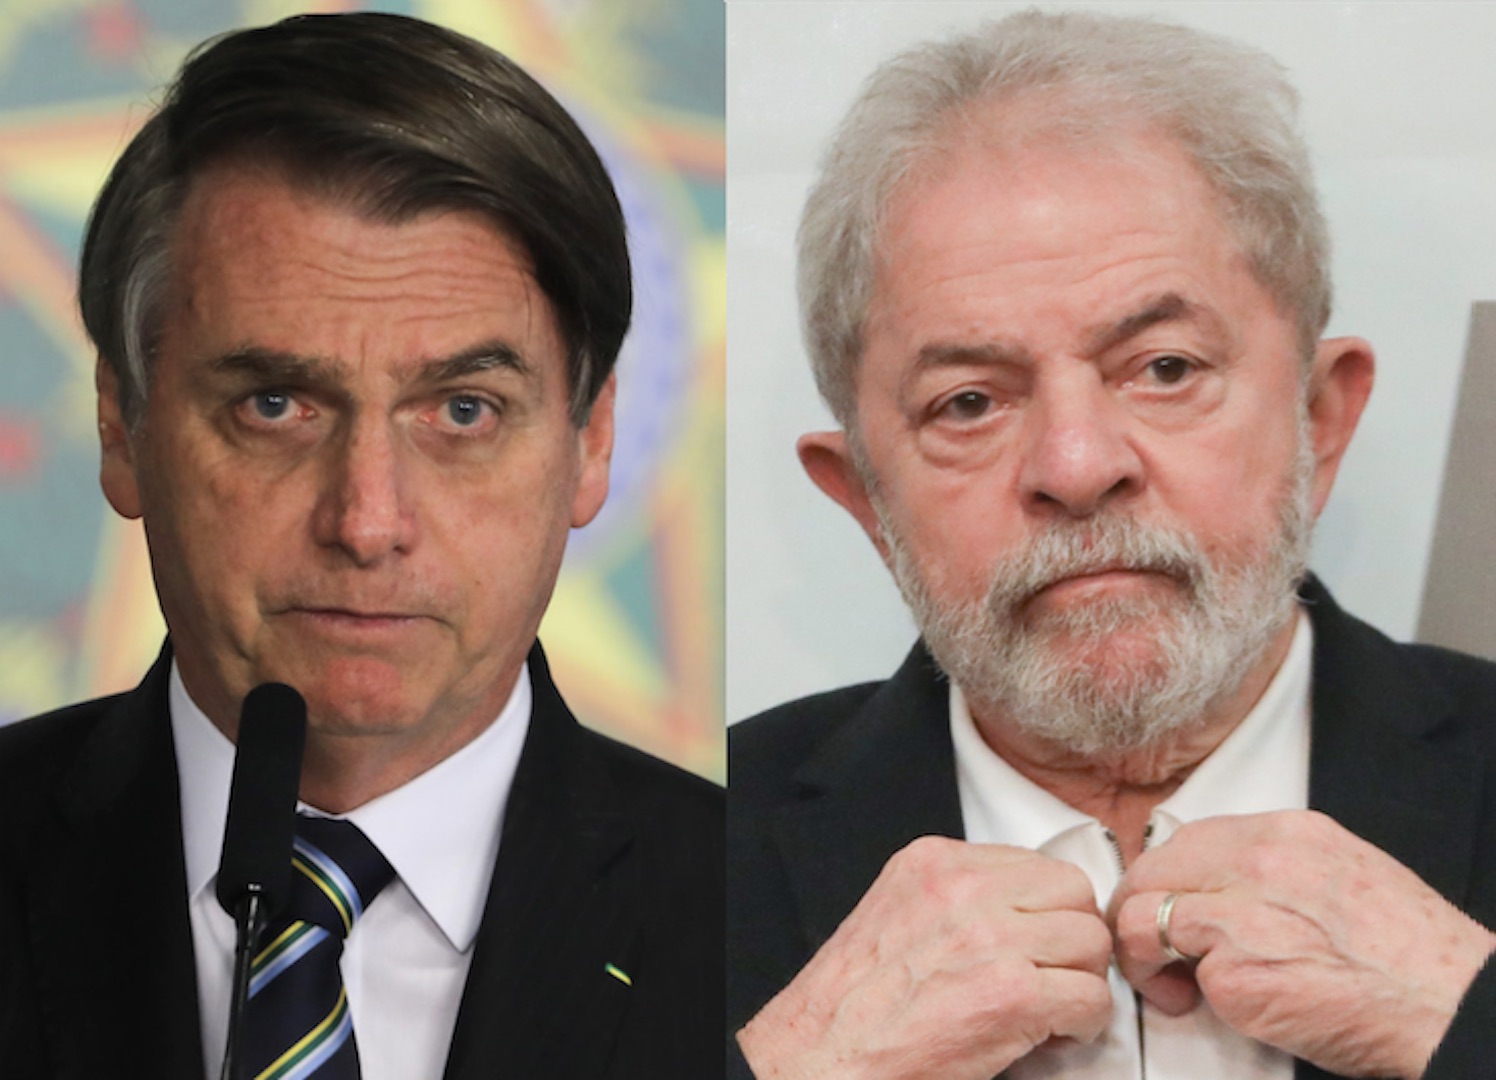 Eleições 2022: Lula tenta atrair a base dos evangélicos; Bolsonaro foca na cúpula das igrejas